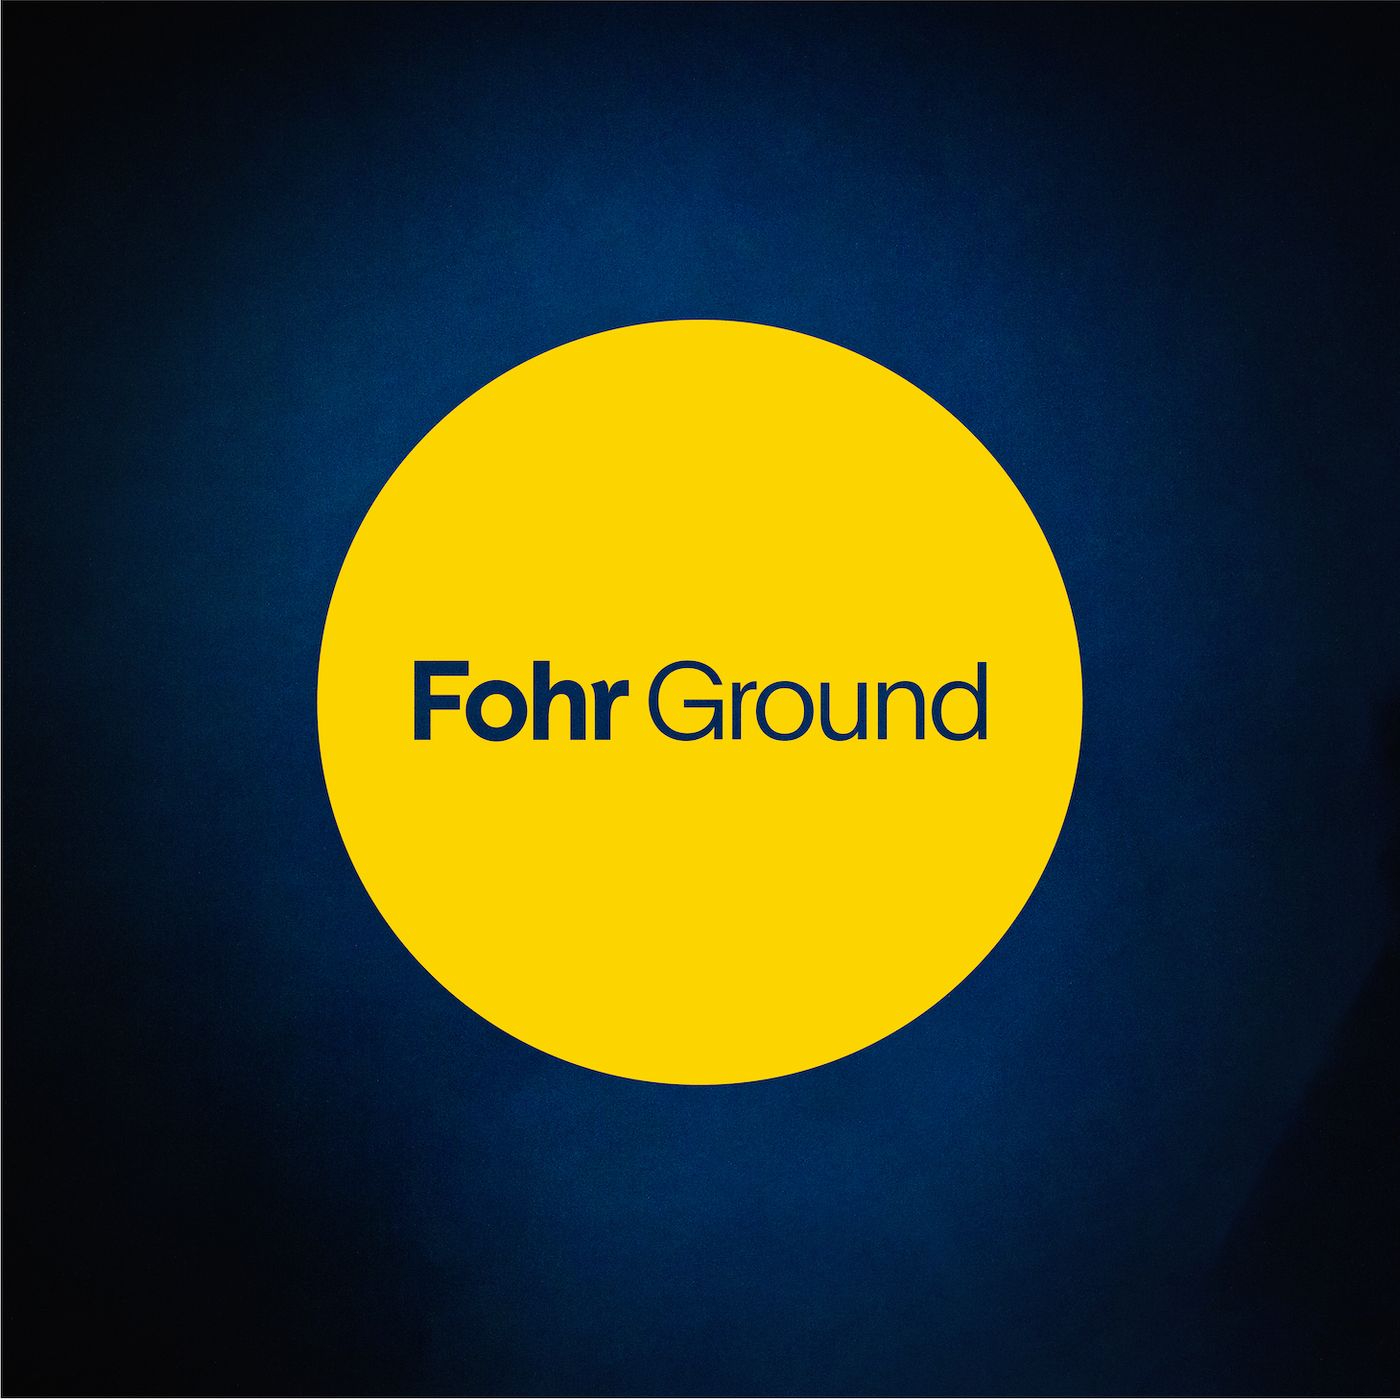 Fohr Ground